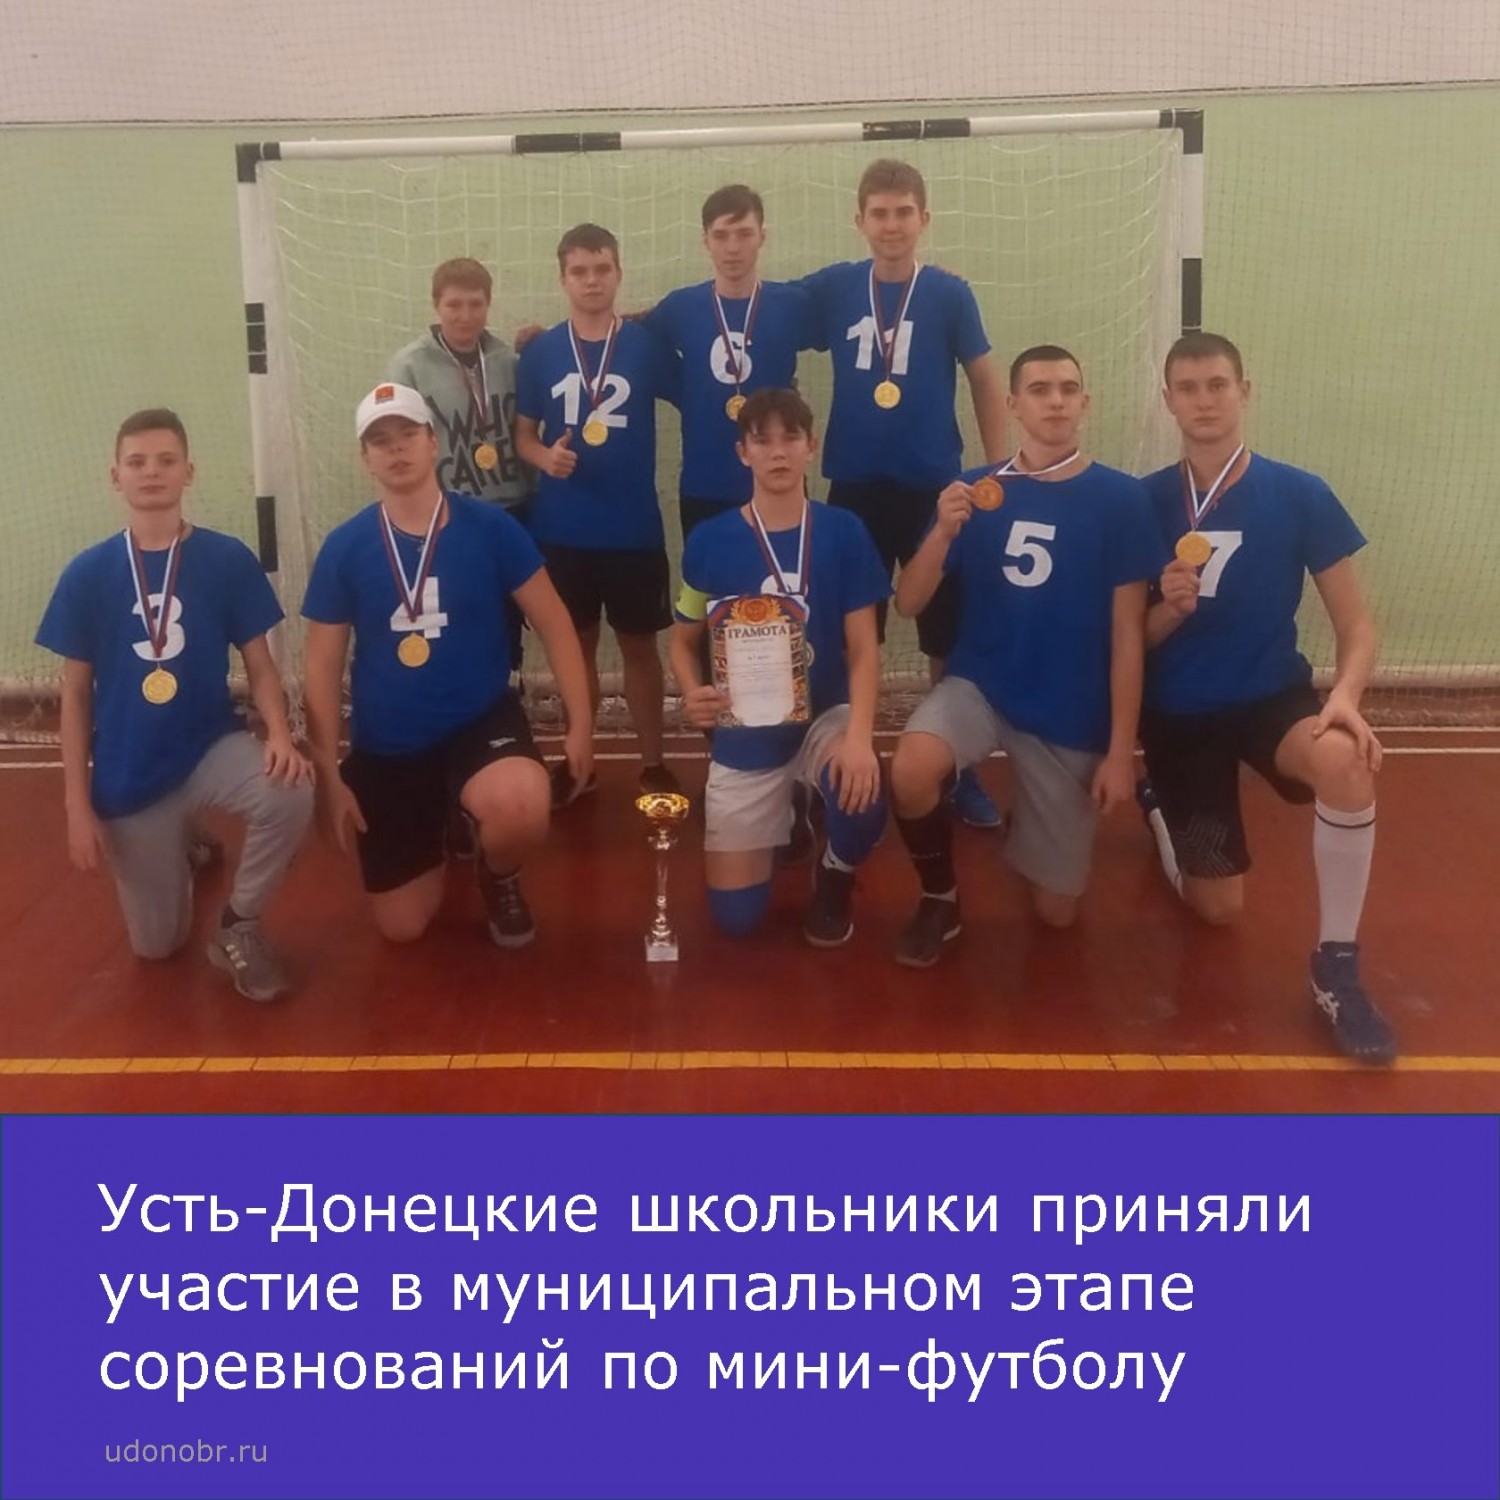 Усть-Донецкие школьники приняли участие в муниципальном этапе соревнований по мини-футболу